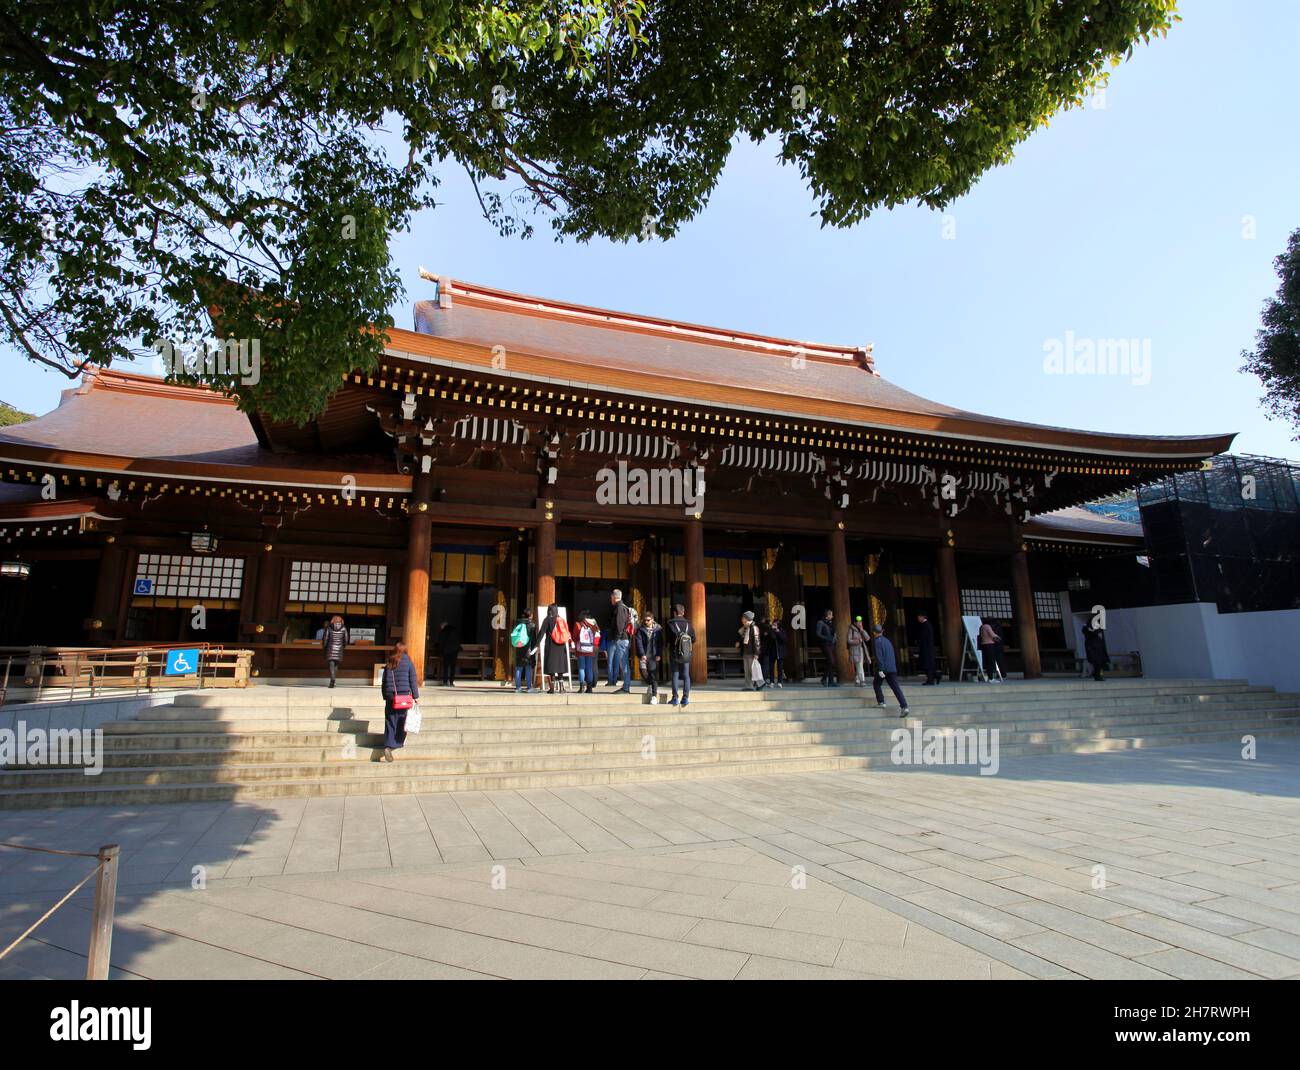 Le sanctuaire Meiji Jingu à Shibuya, Tokyo, Japon.Le sanctuaire est un sanctuaire shinto et est fait de bois de couleur naturelle.Plusieurs visiteurs sont présents. Banque D'Images